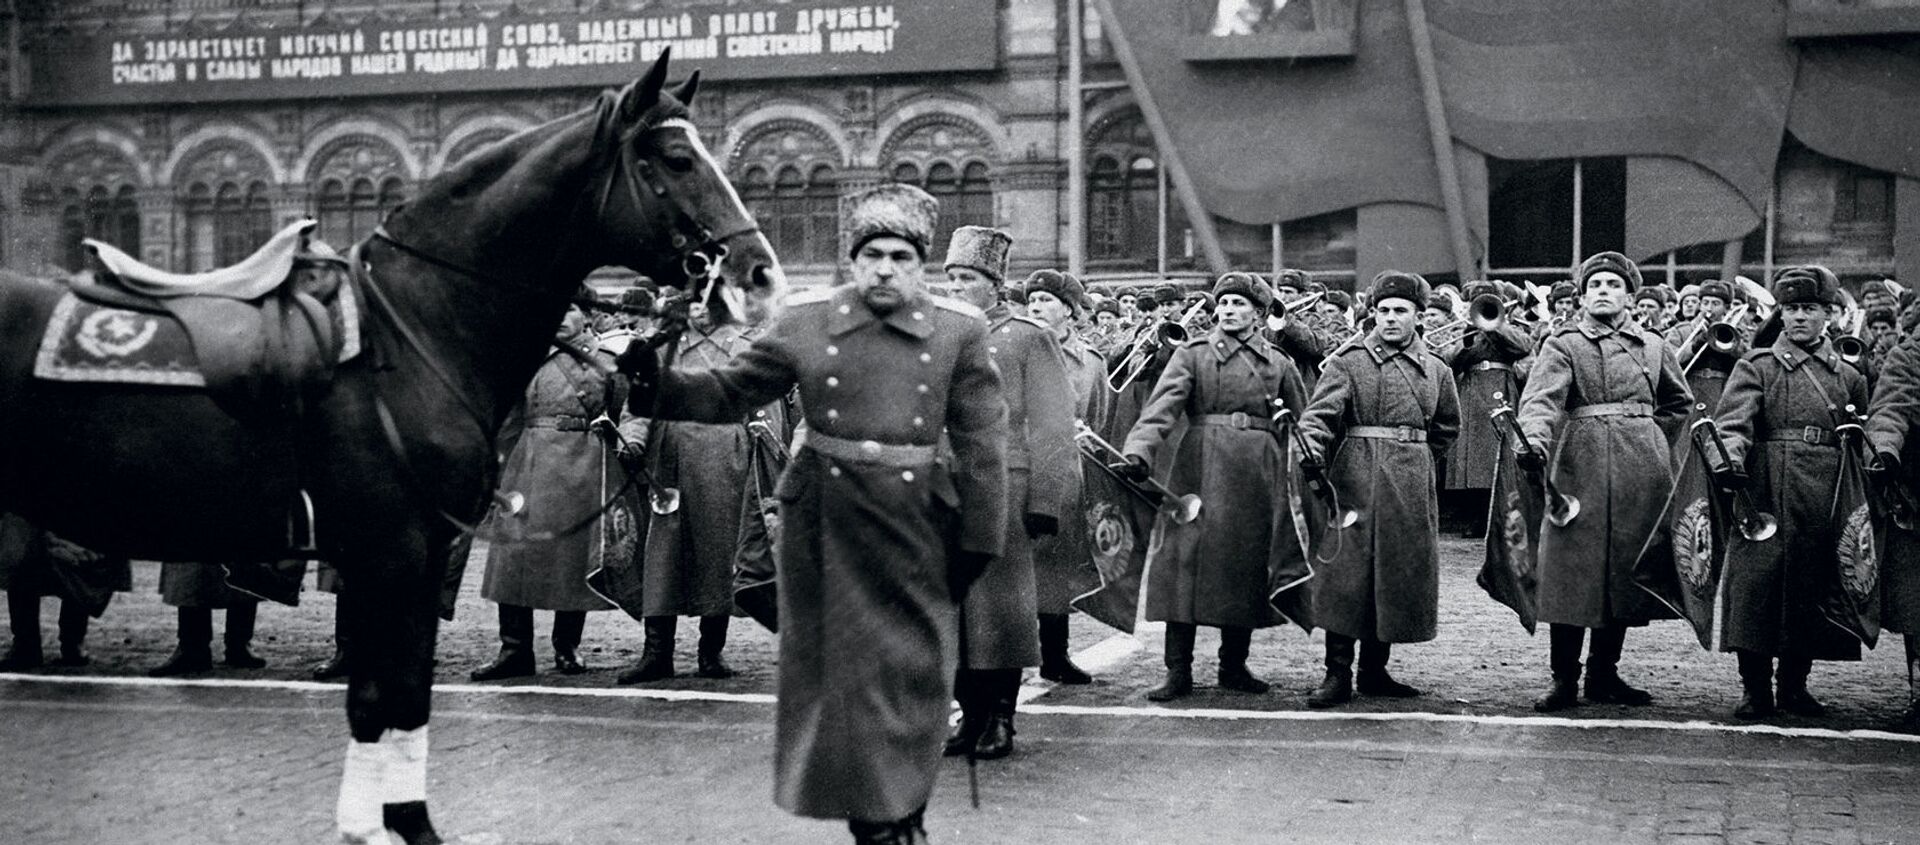 Nguyên soái Liên Xô L.A. Govorov chuẩn bị tiếp nhận cuộc duyệt binh trên Quảng trường Đỏ. 7 tháng 11 năm 1947. - Sputnik Việt Nam, 1920, 07.11.2020